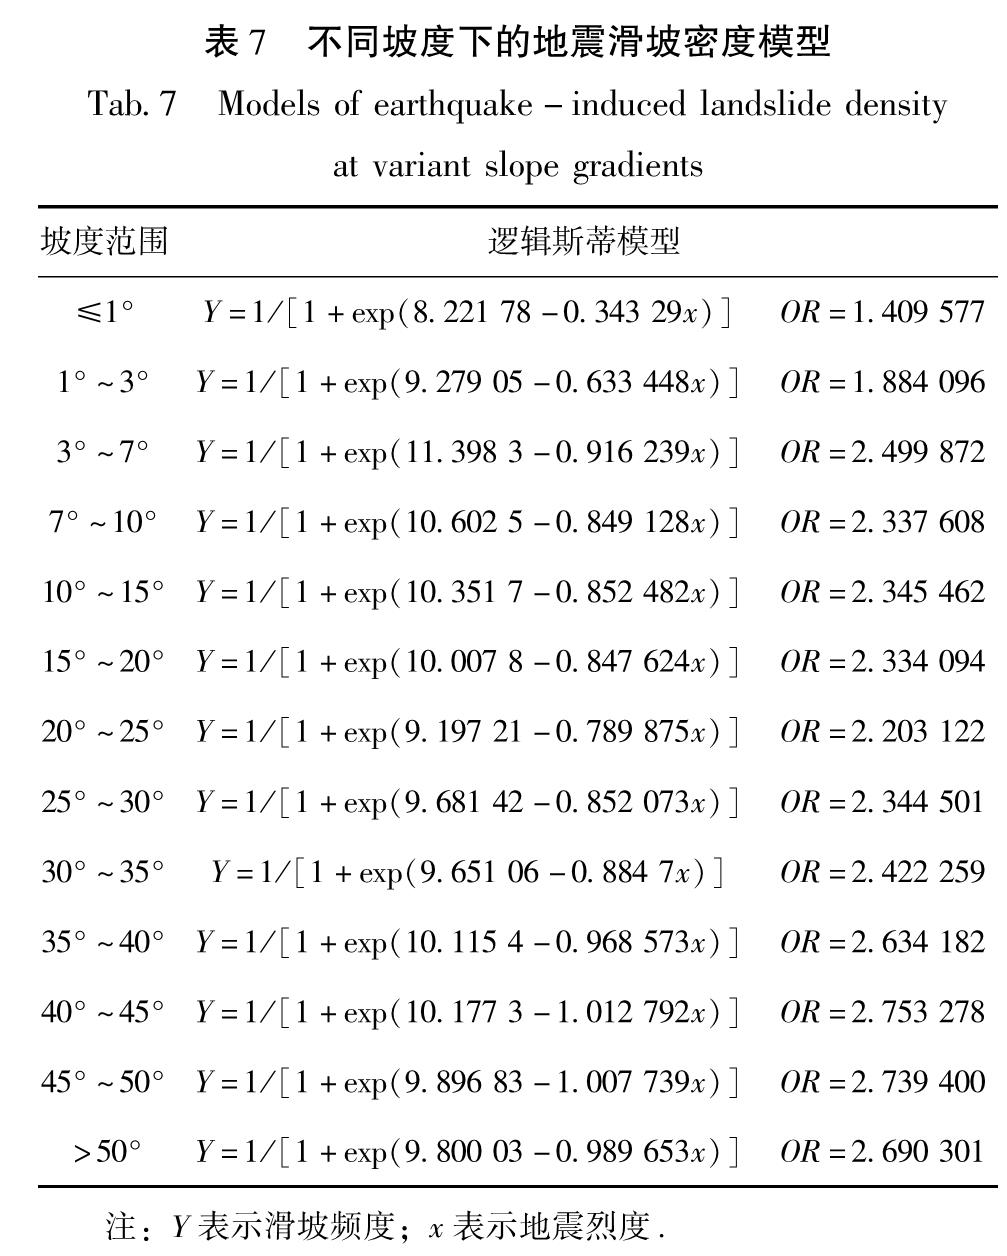 表7 不同坡度下的地震滑坡密度模型<br/>Tab.7 Models of earthquake-induced landslide density at variant slope gradients